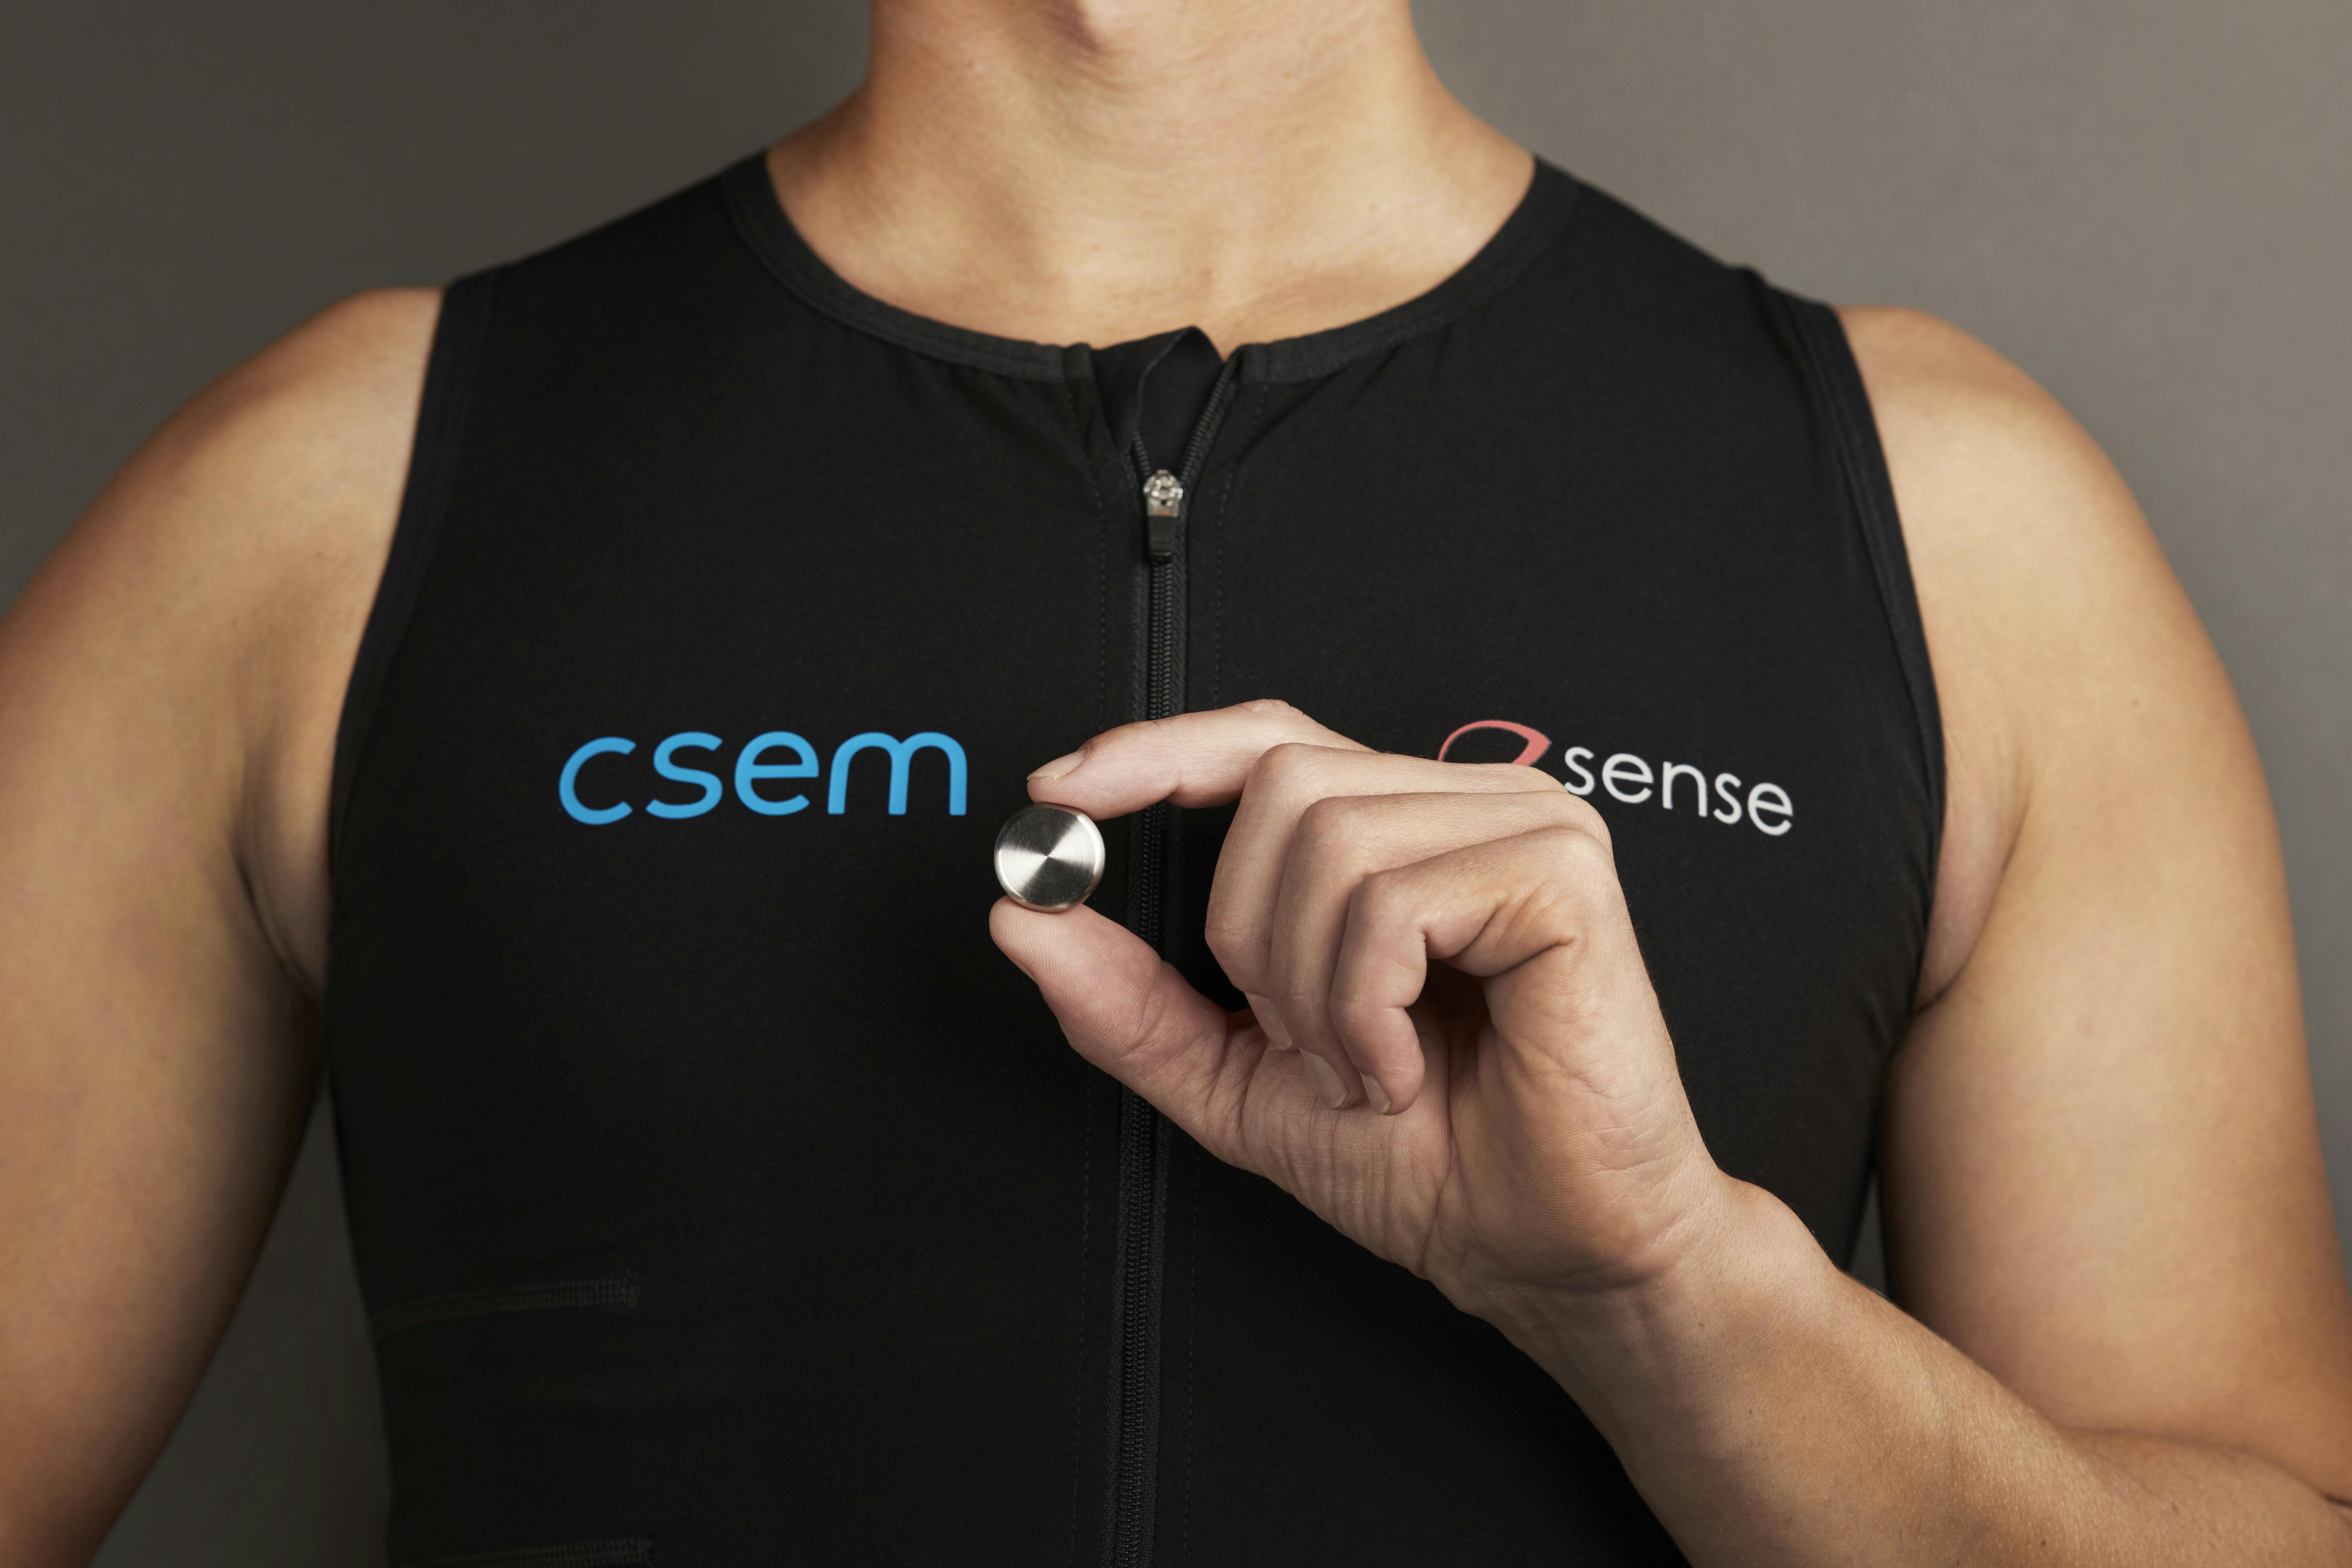 CSEM's healthcare technology